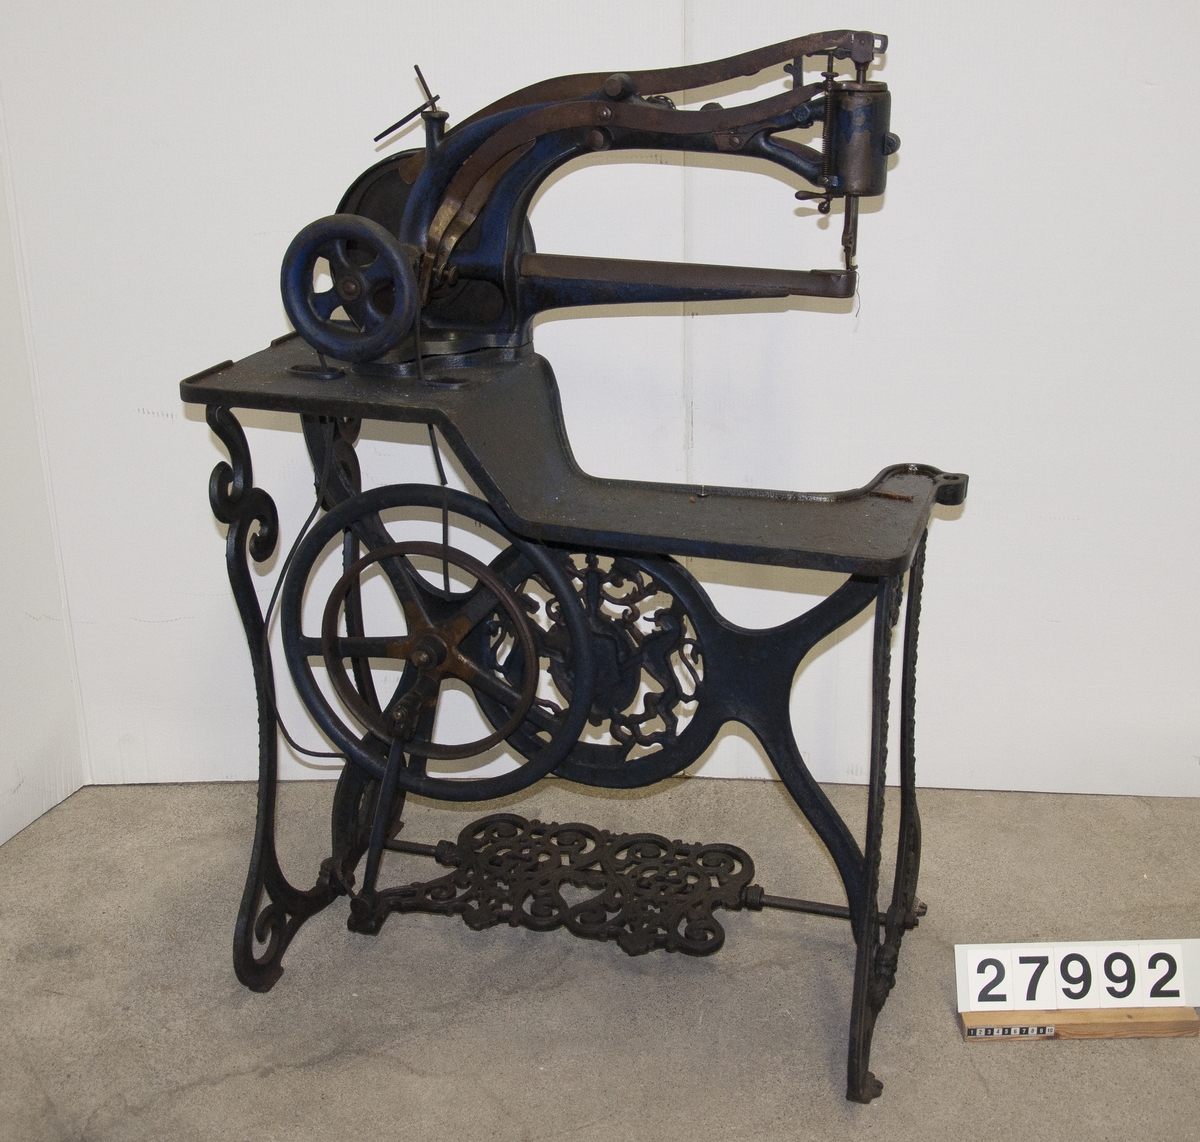 Symaskin, "Patent Elastique" för skonåtling, hand- och trampdriven, på stativ av järn.